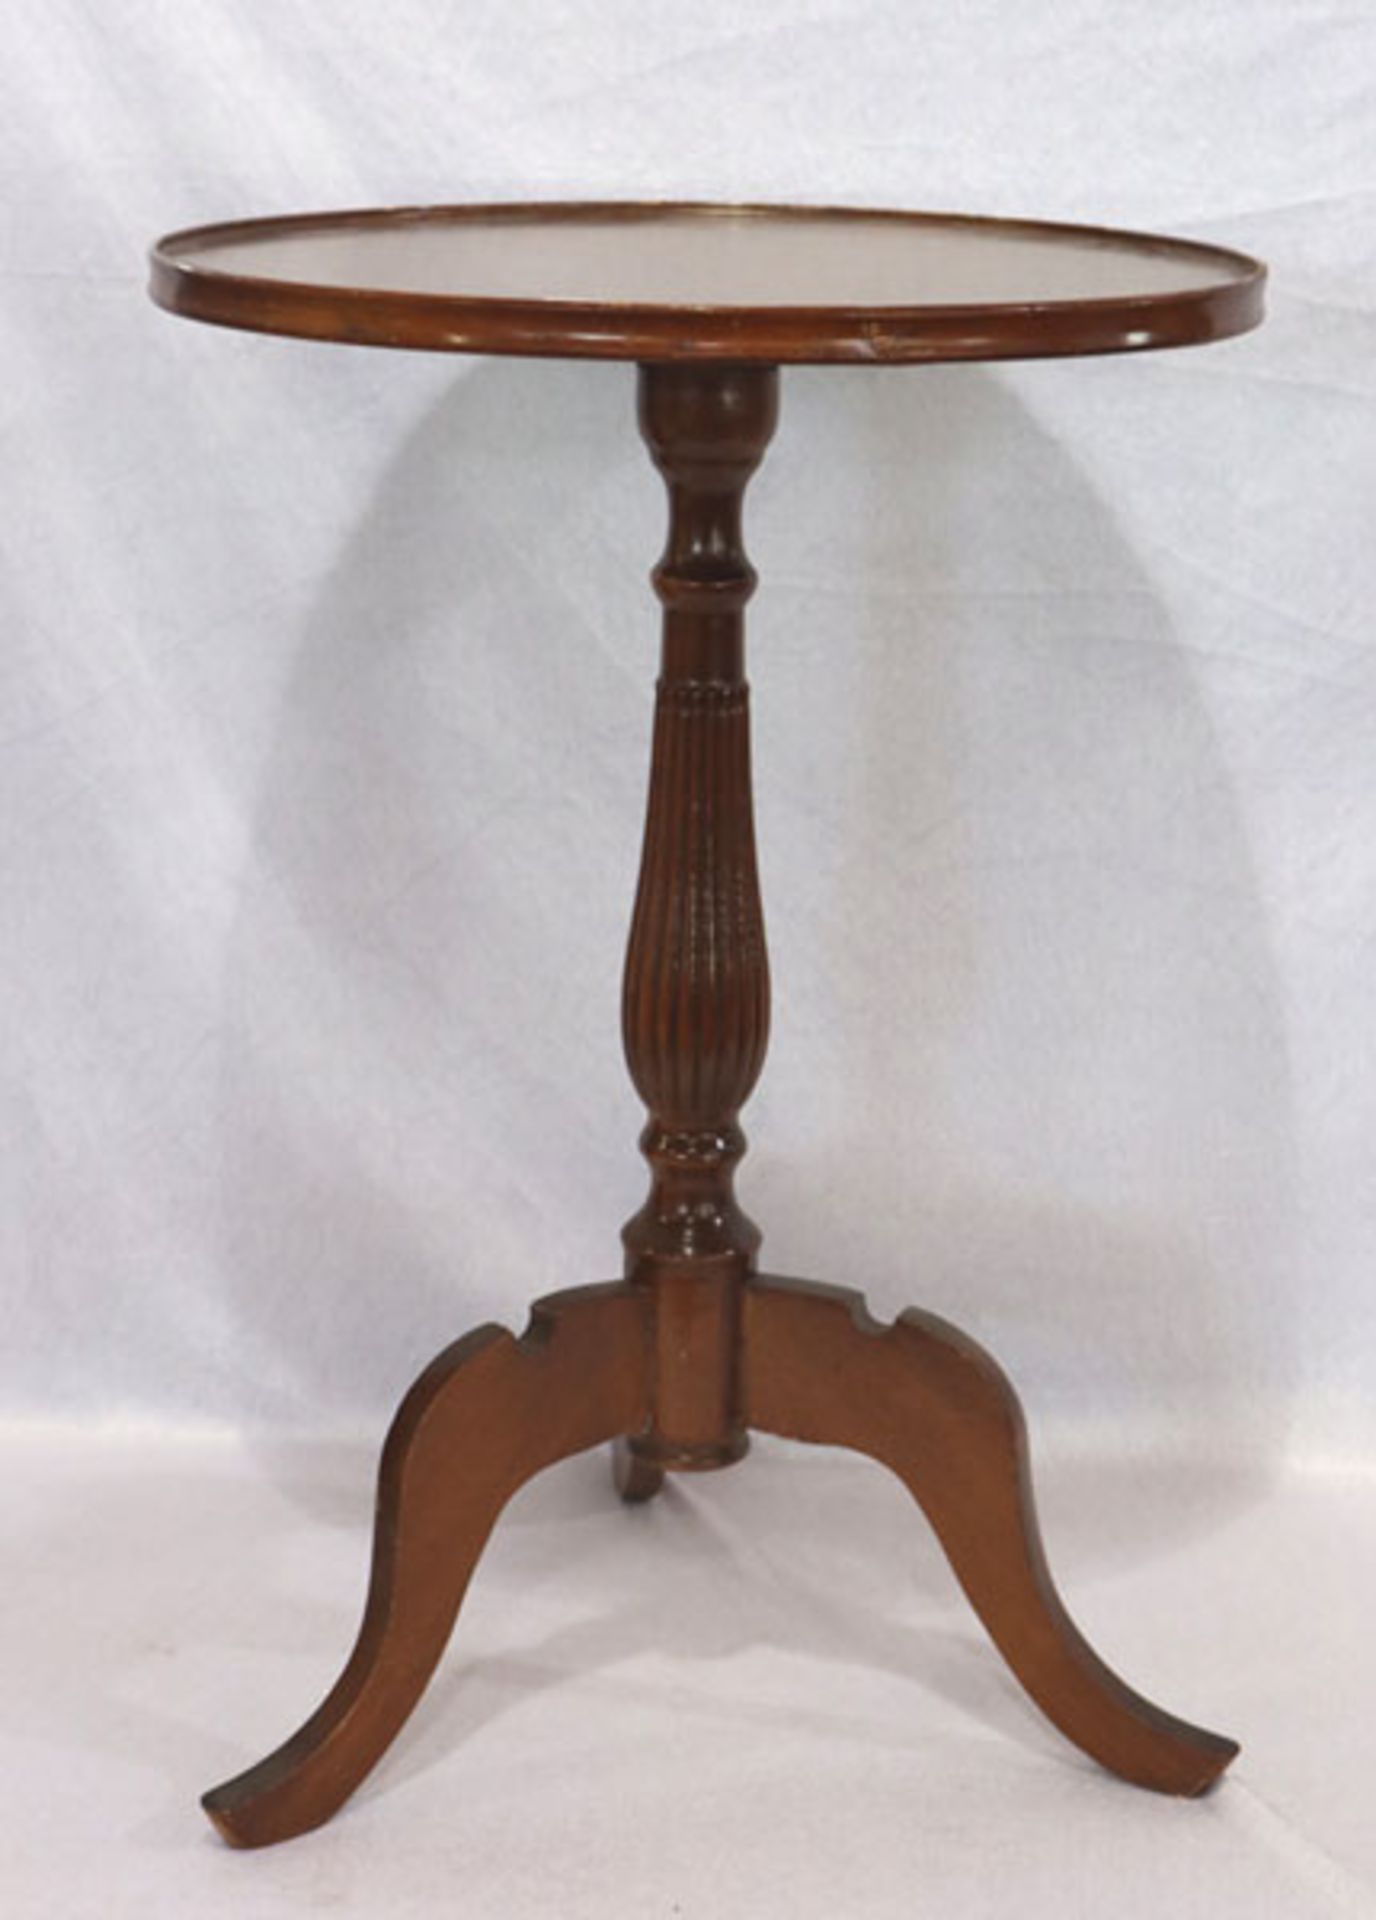 Weintisch auf Mittelfuß mit 3 Beinen, Tischplatte mit Folie beklebt, H 63 cm, D 45 cm,